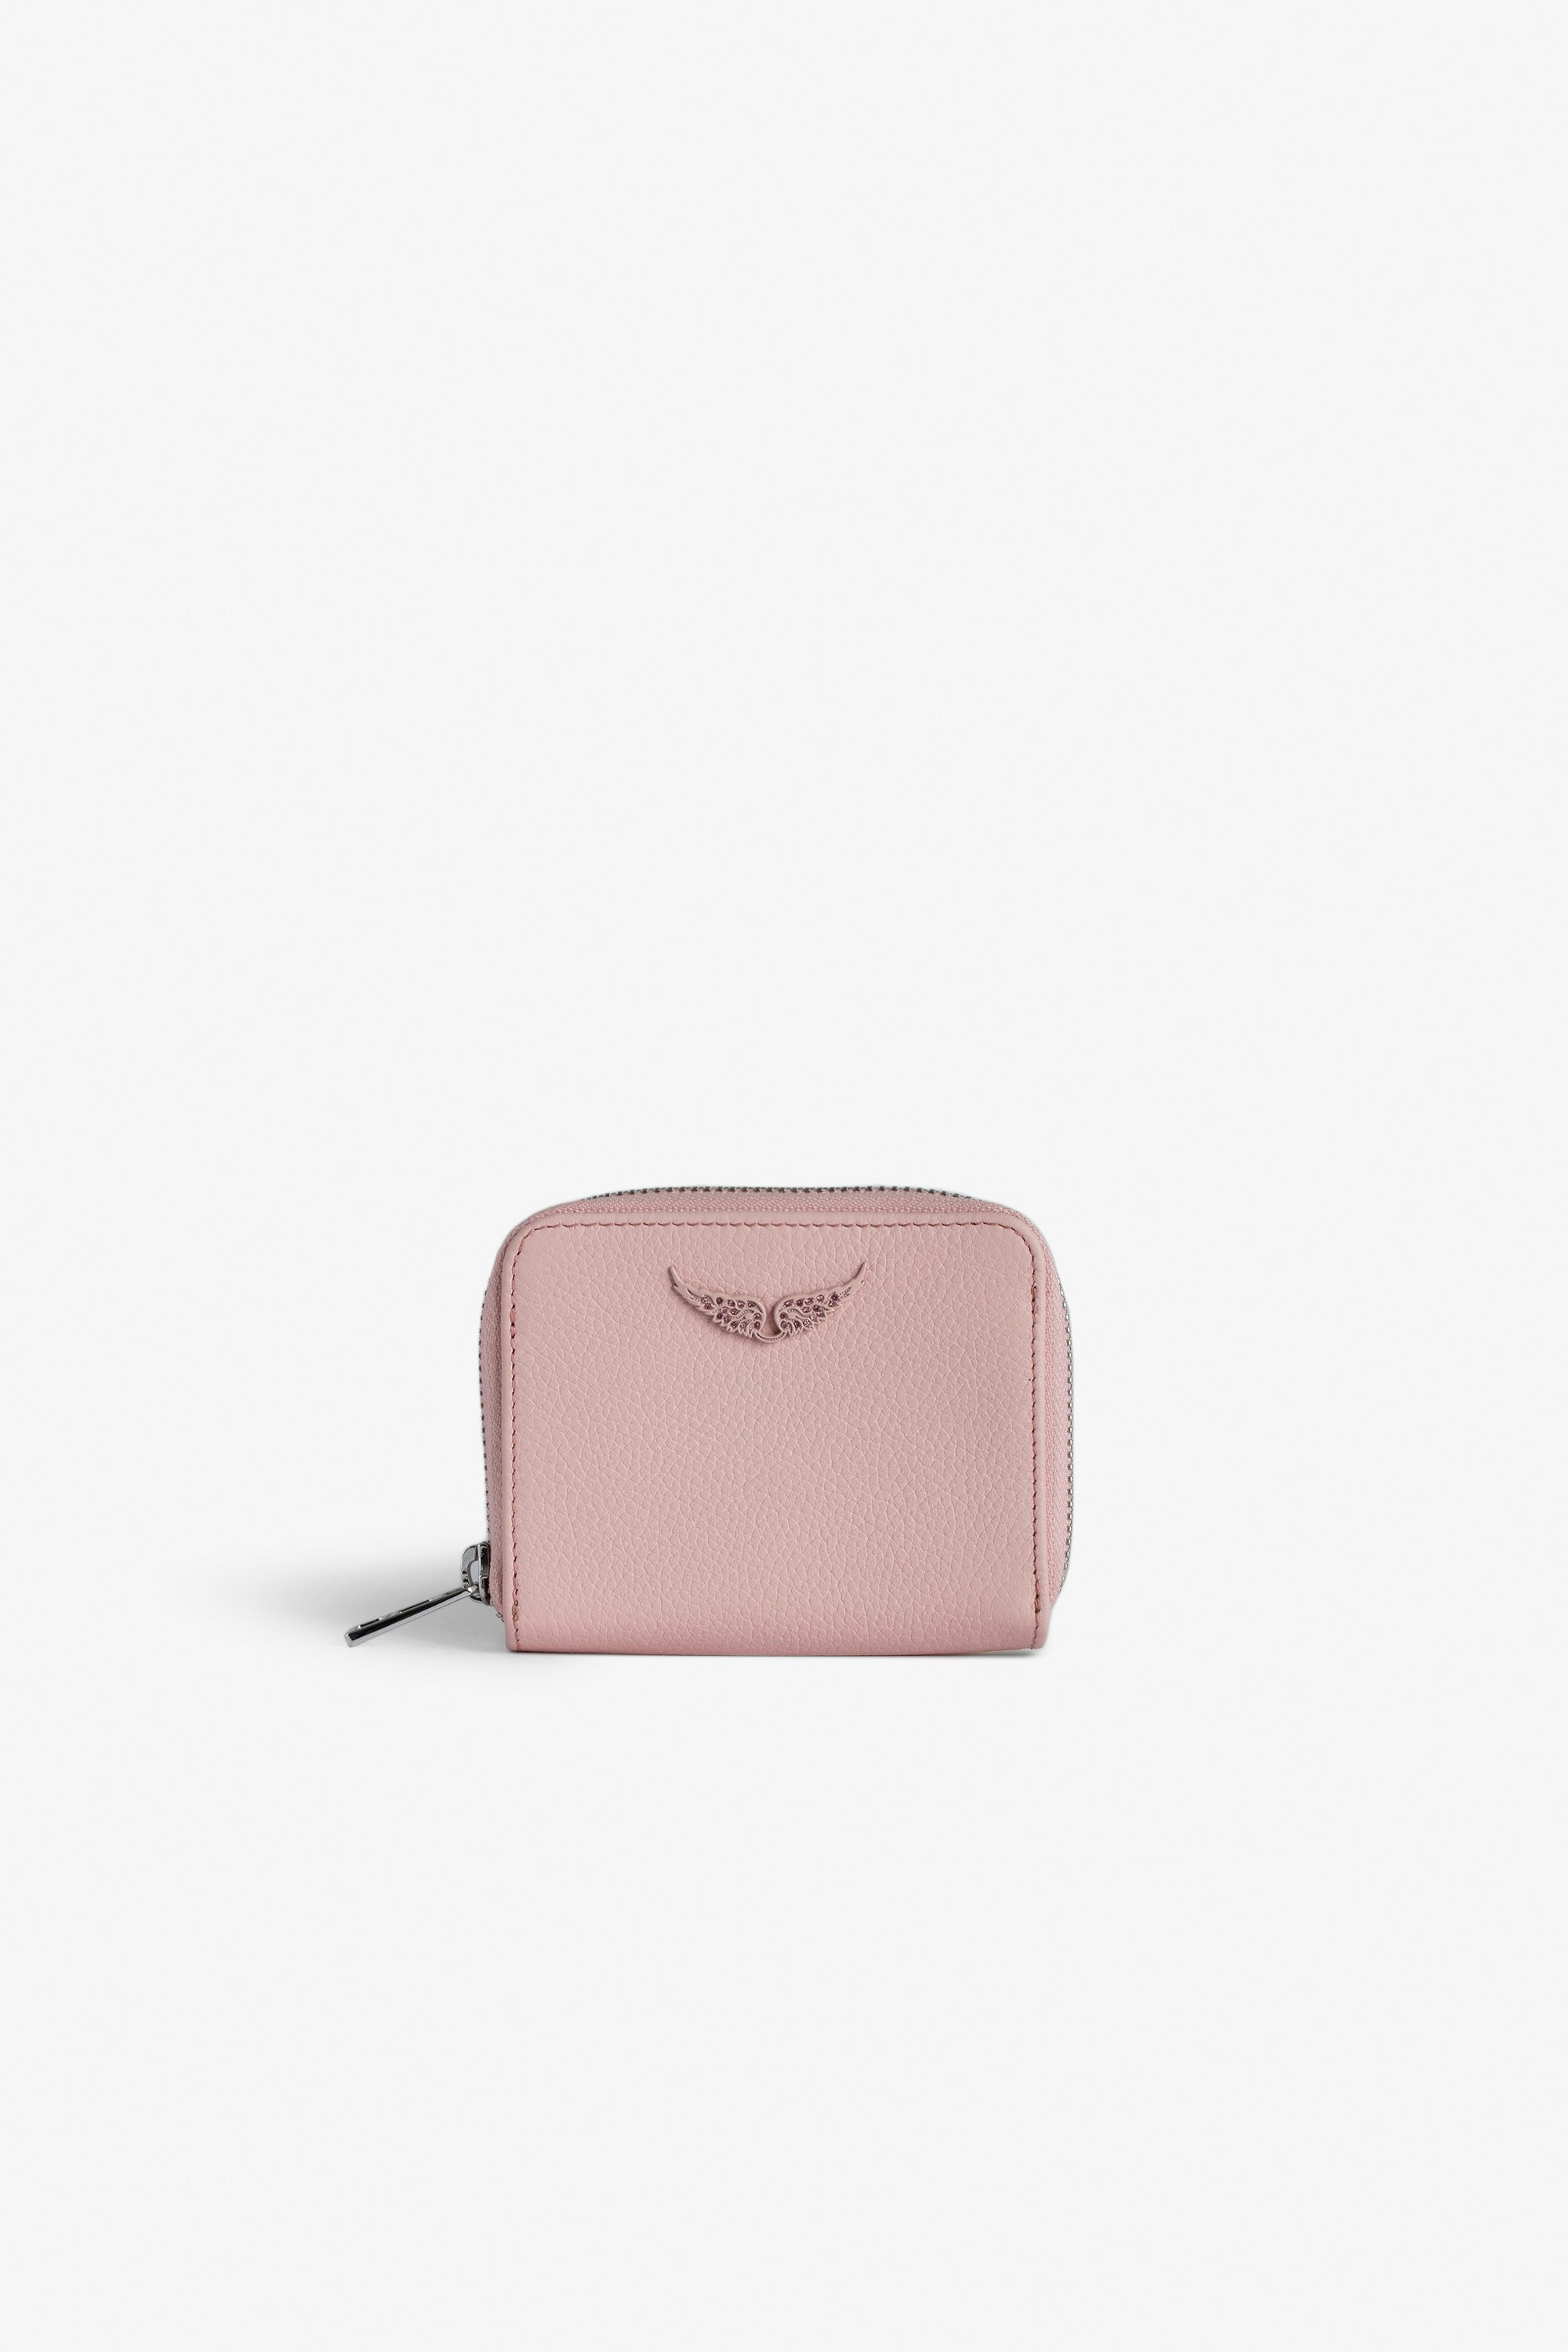 Porte-Monnaie Mini ZV Portefeuille en cuir grainé rose à charm ailes en strass femme.